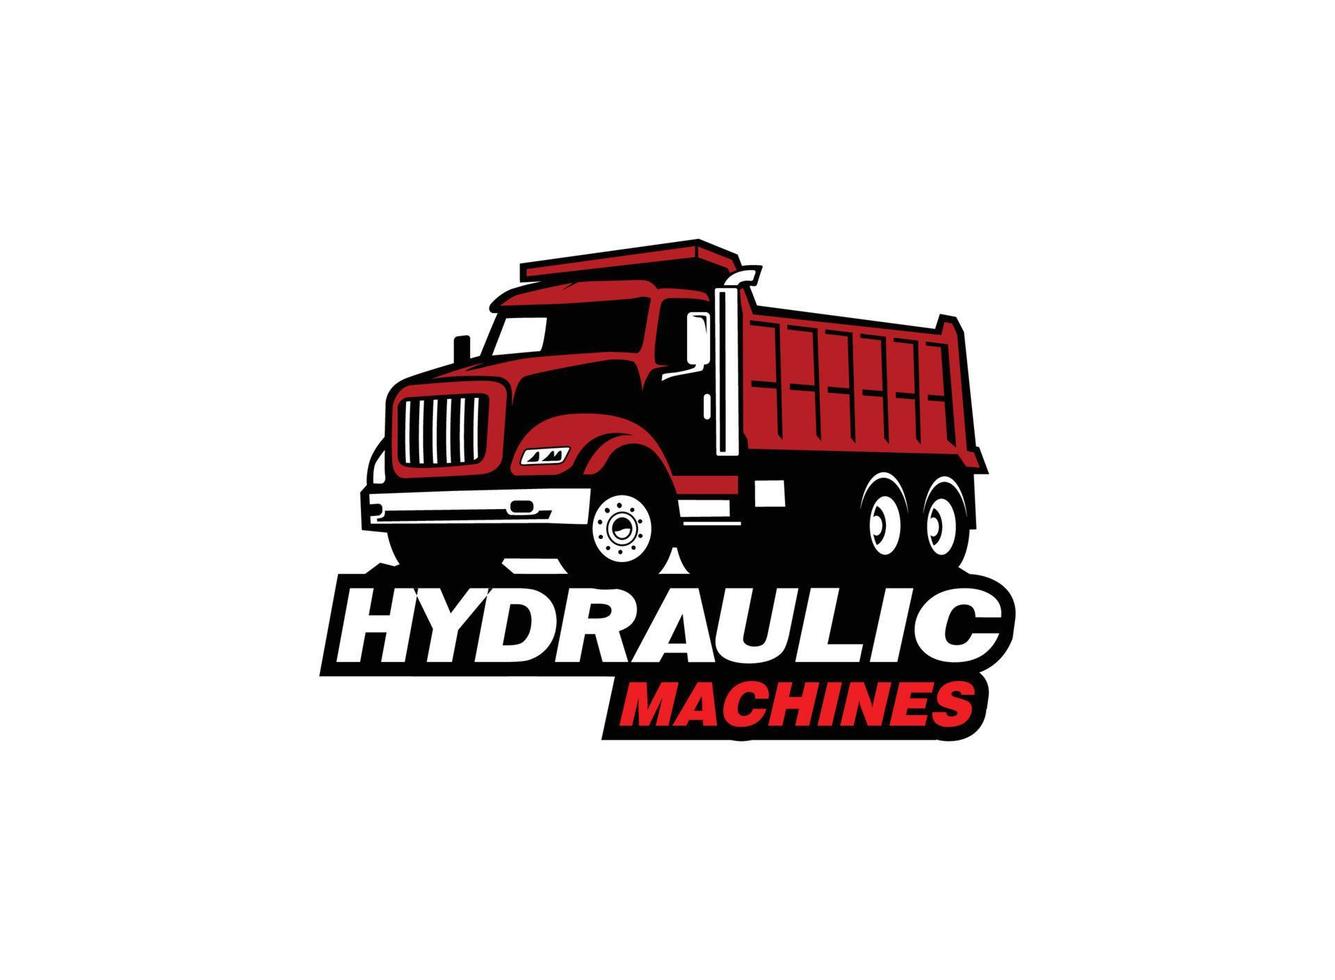 vetor de logotipo de caminhão basculante para empresa de construção. ilustração vetorial de modelo de equipamento pesado para sua marca.